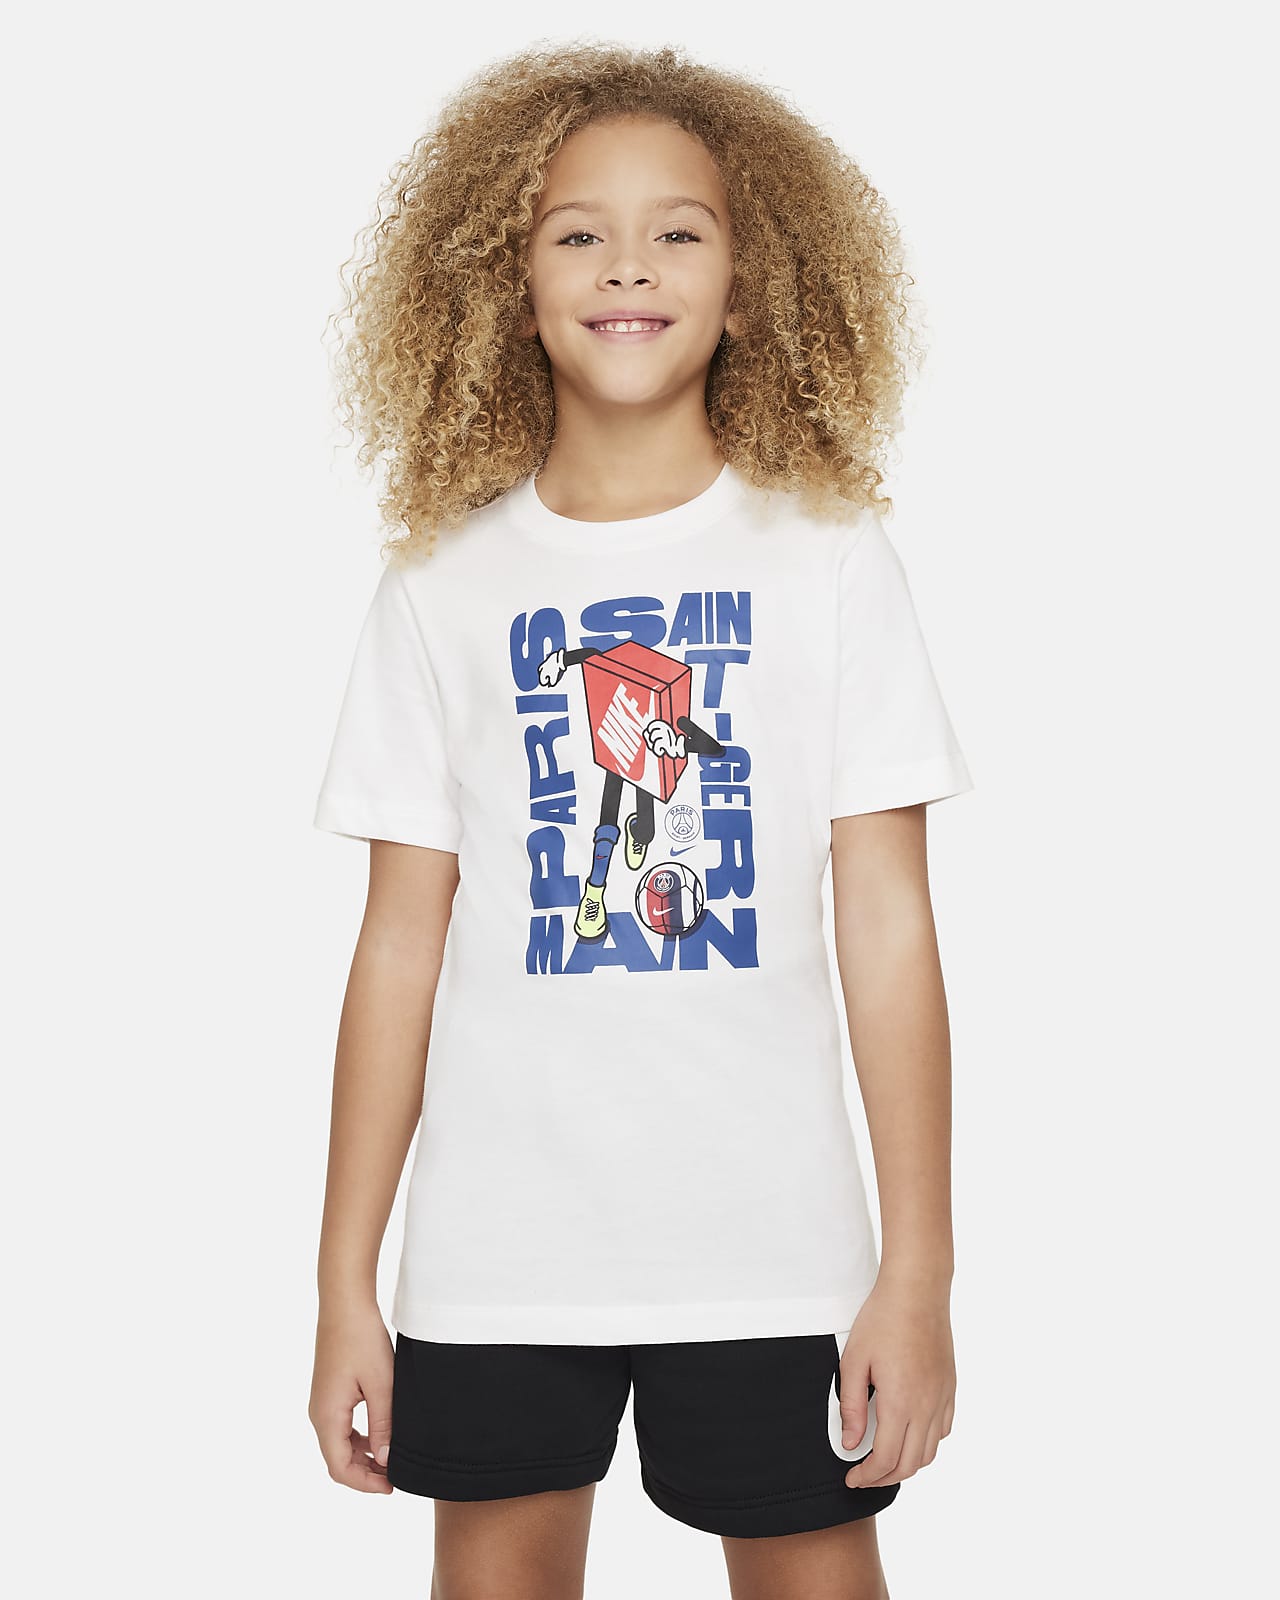 París Saint-Germain Camiseta Nike Football - Niño/a